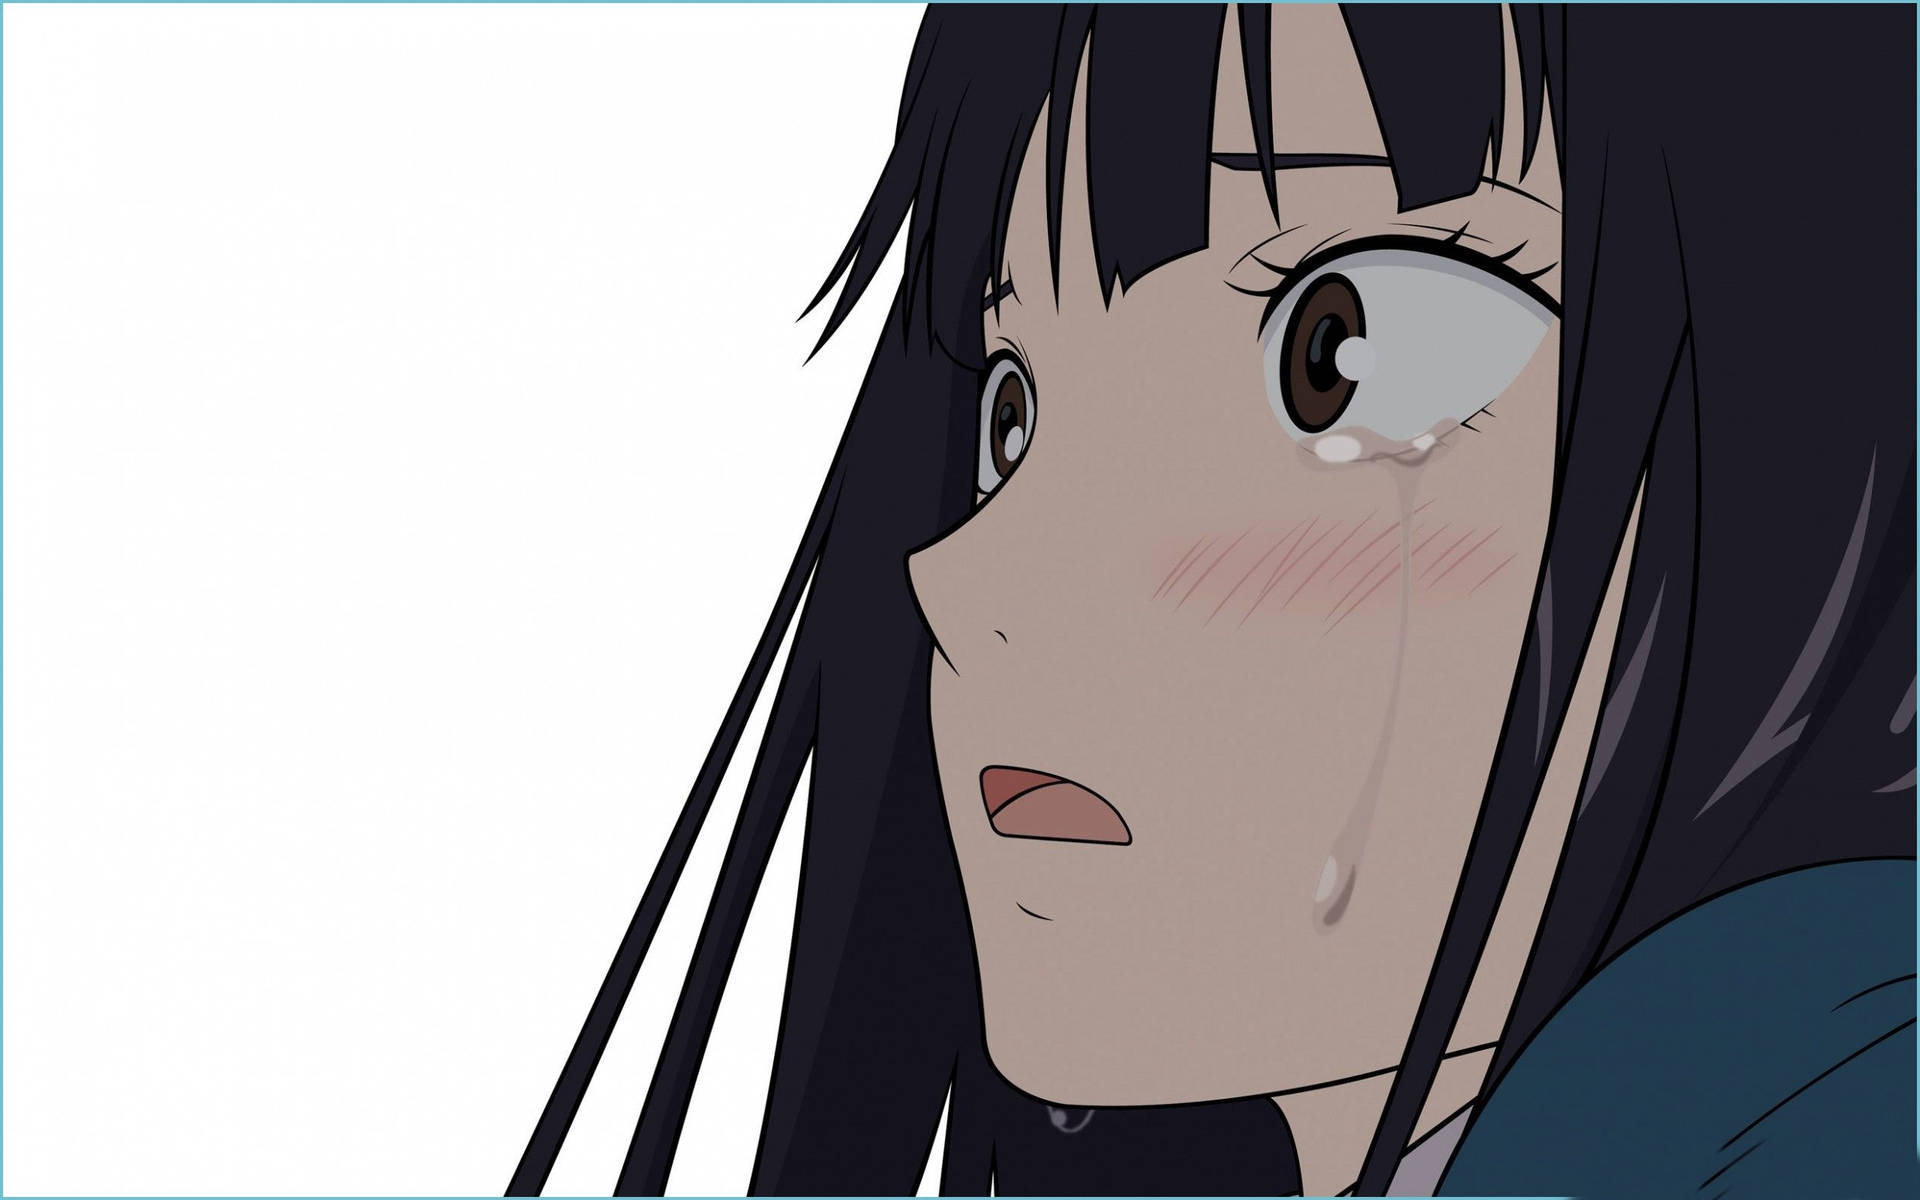 Blushing Depressed Anime Girl Wallpaper